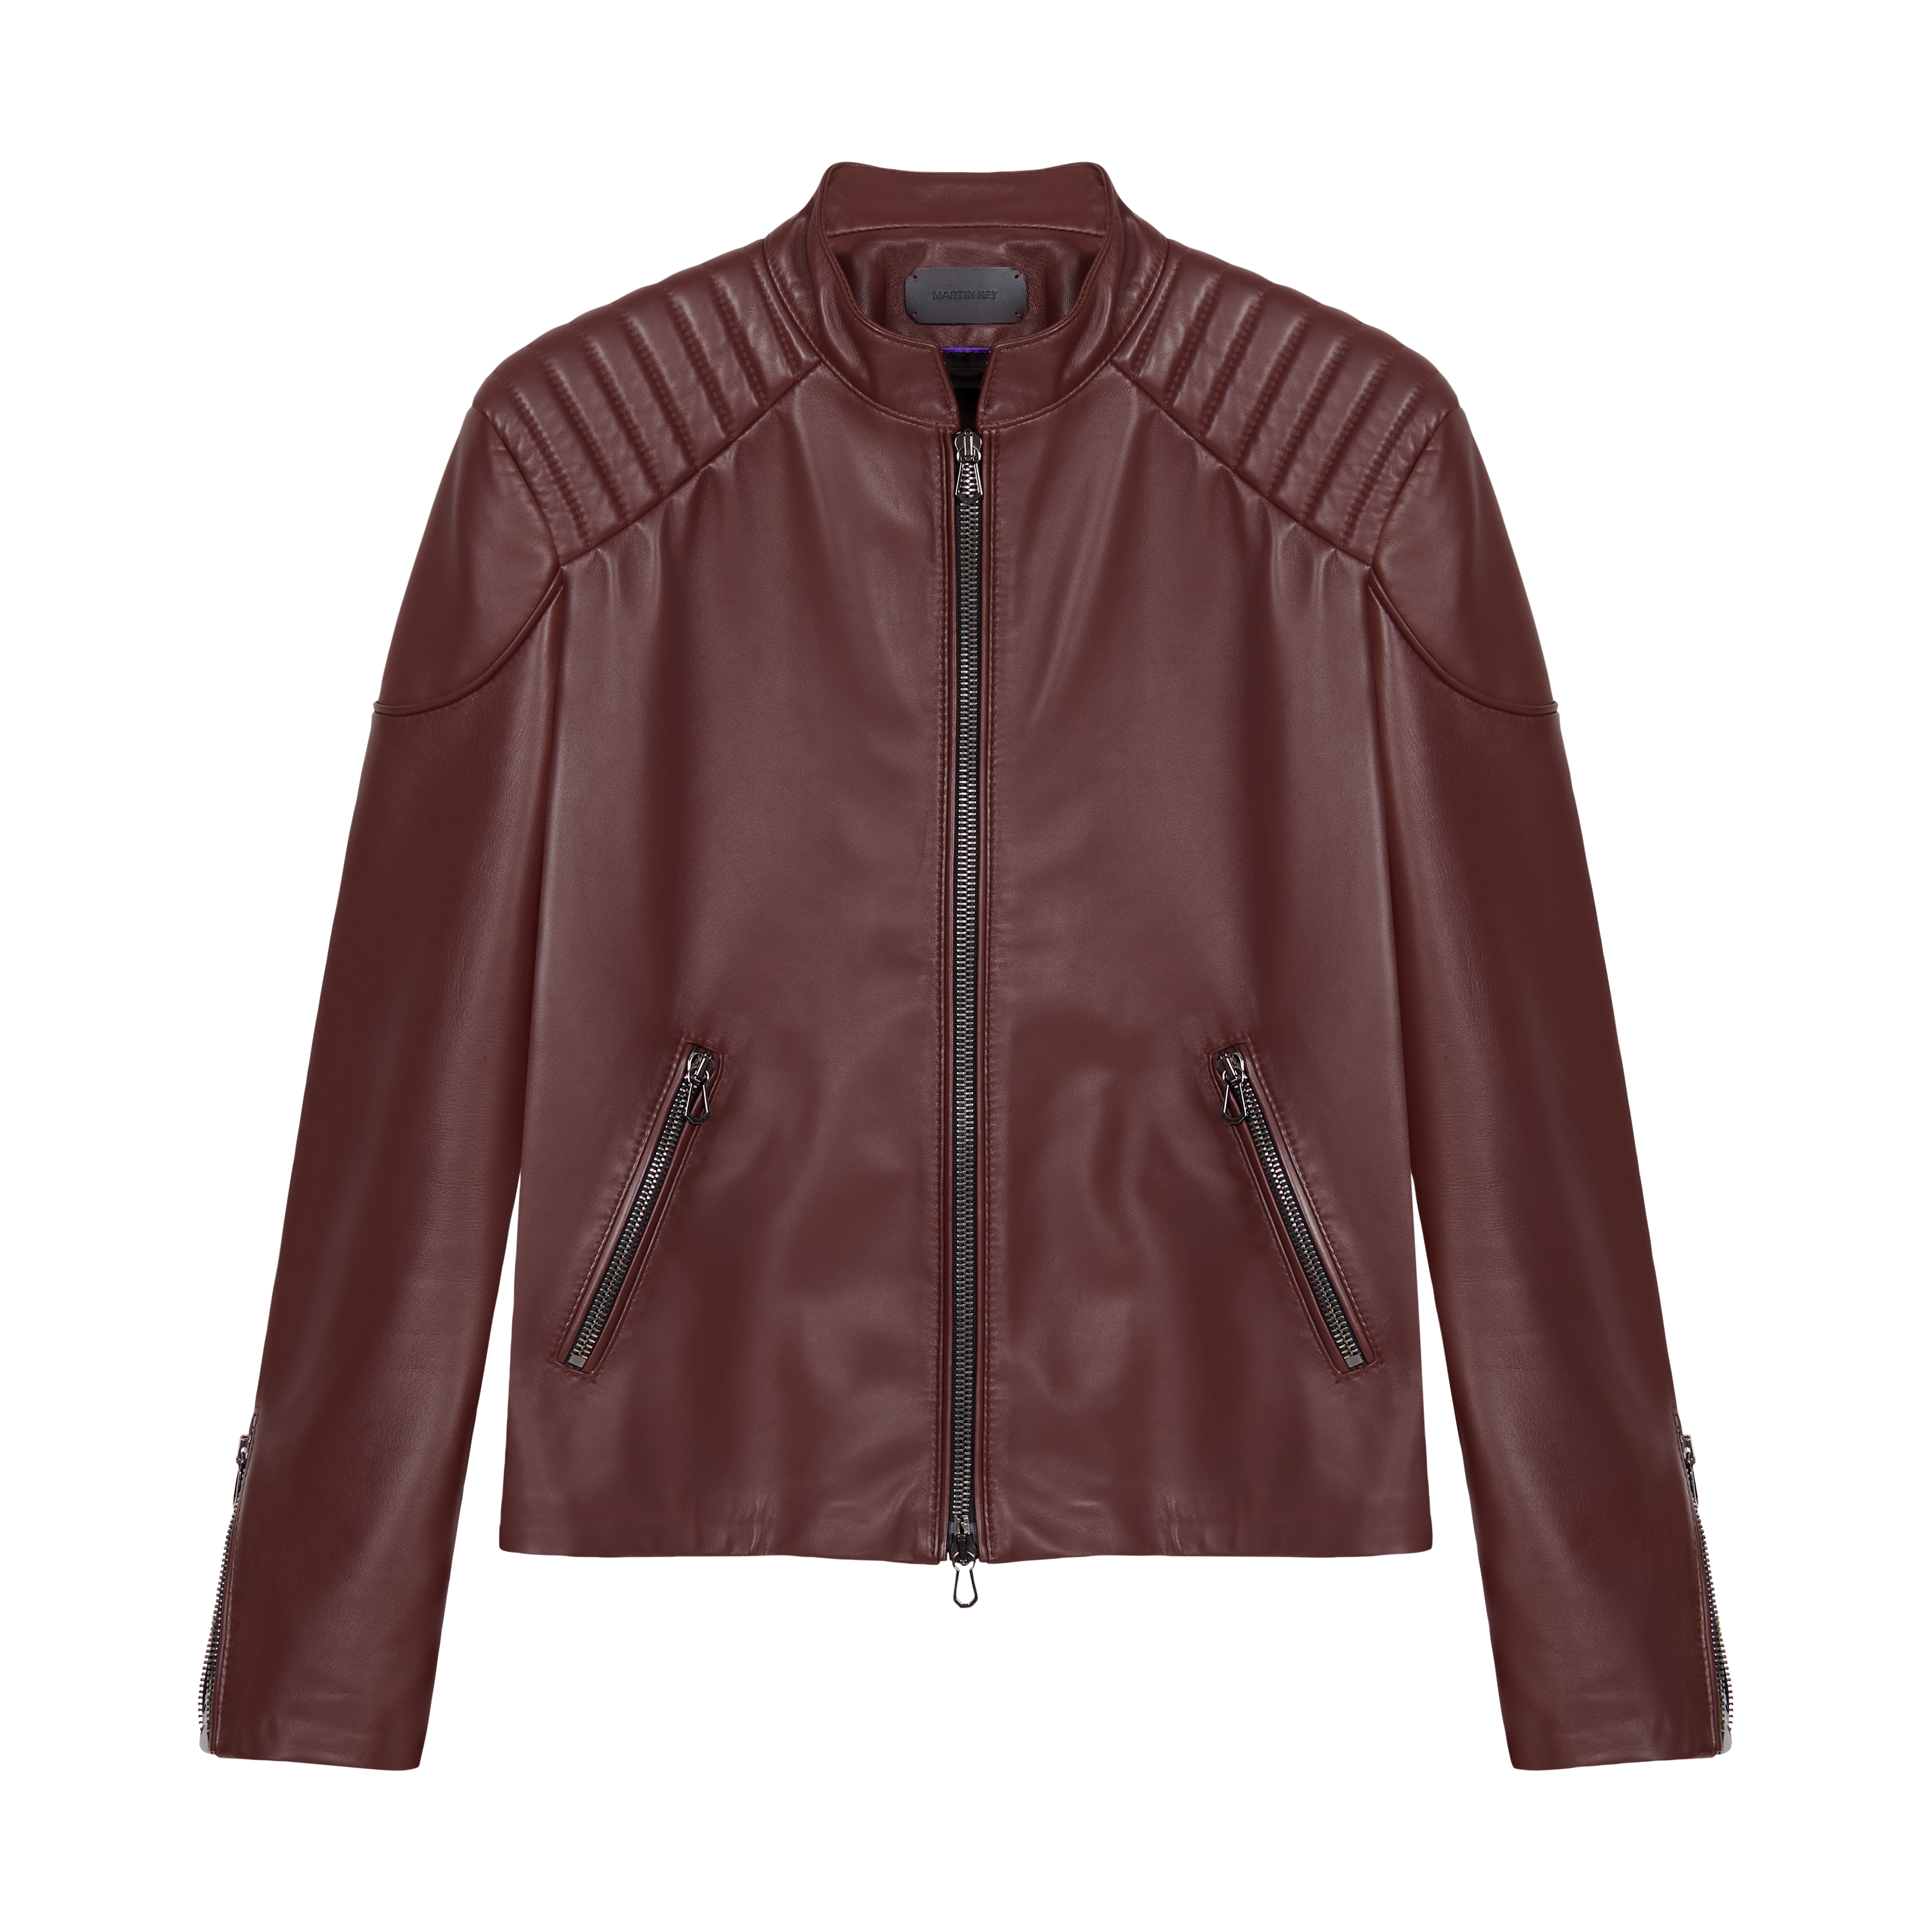 Leather jacket - NY by Martin Key